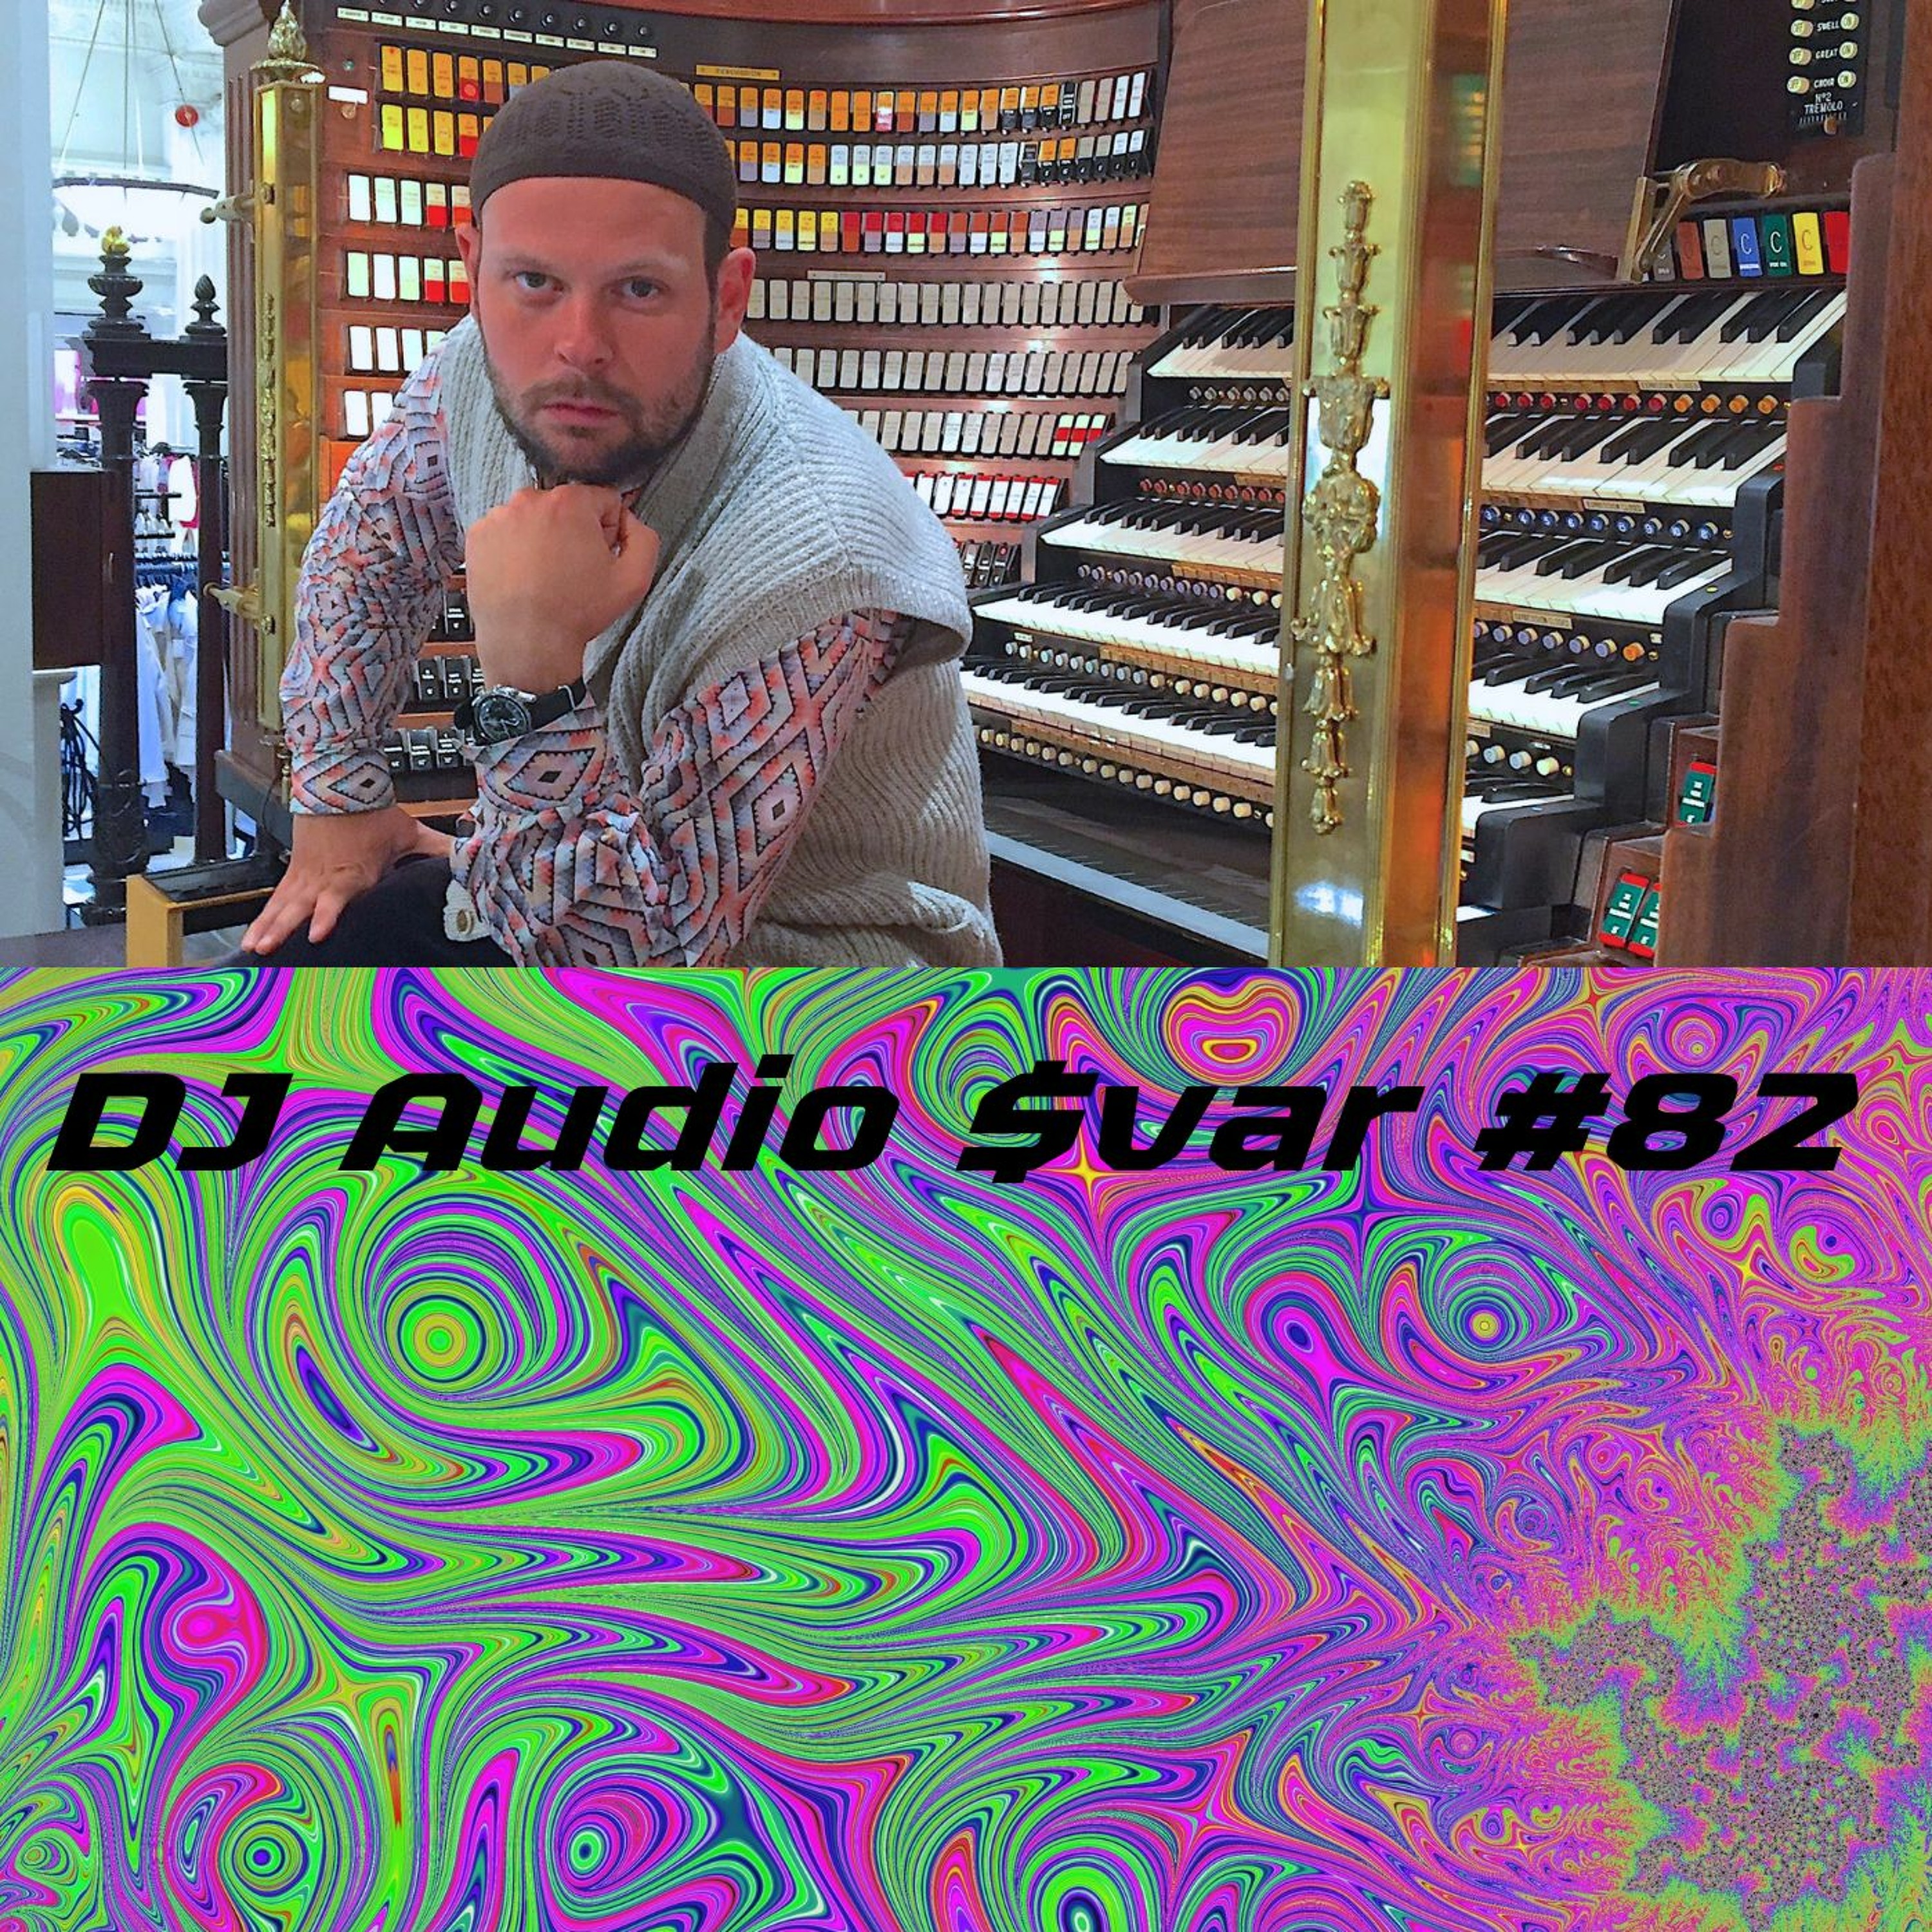 DJ Audio $var #82